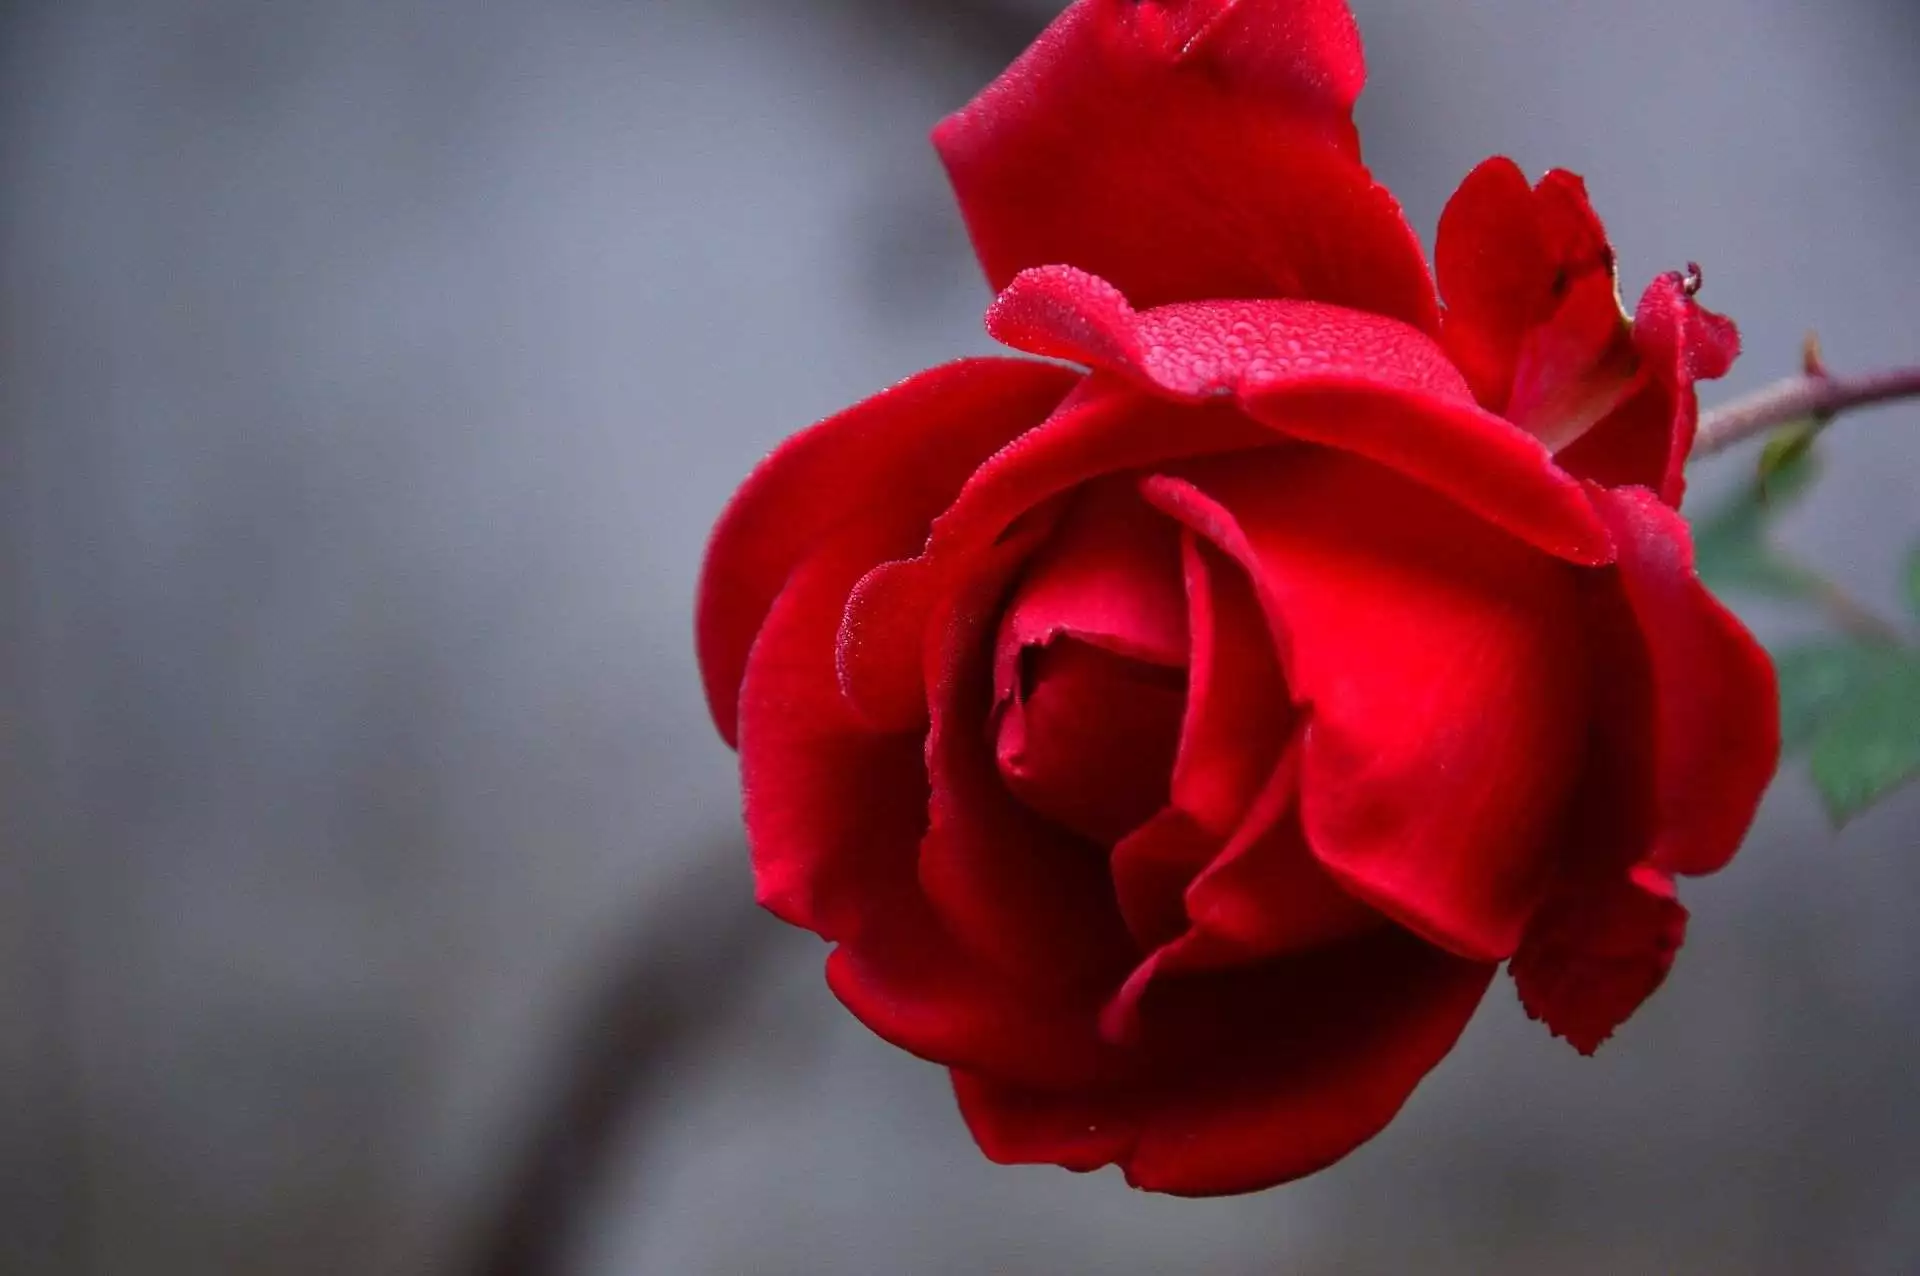 Kenapa Orang-orang Suka Ngasih Coklat dan Mawar saat Hari Valentine? 99